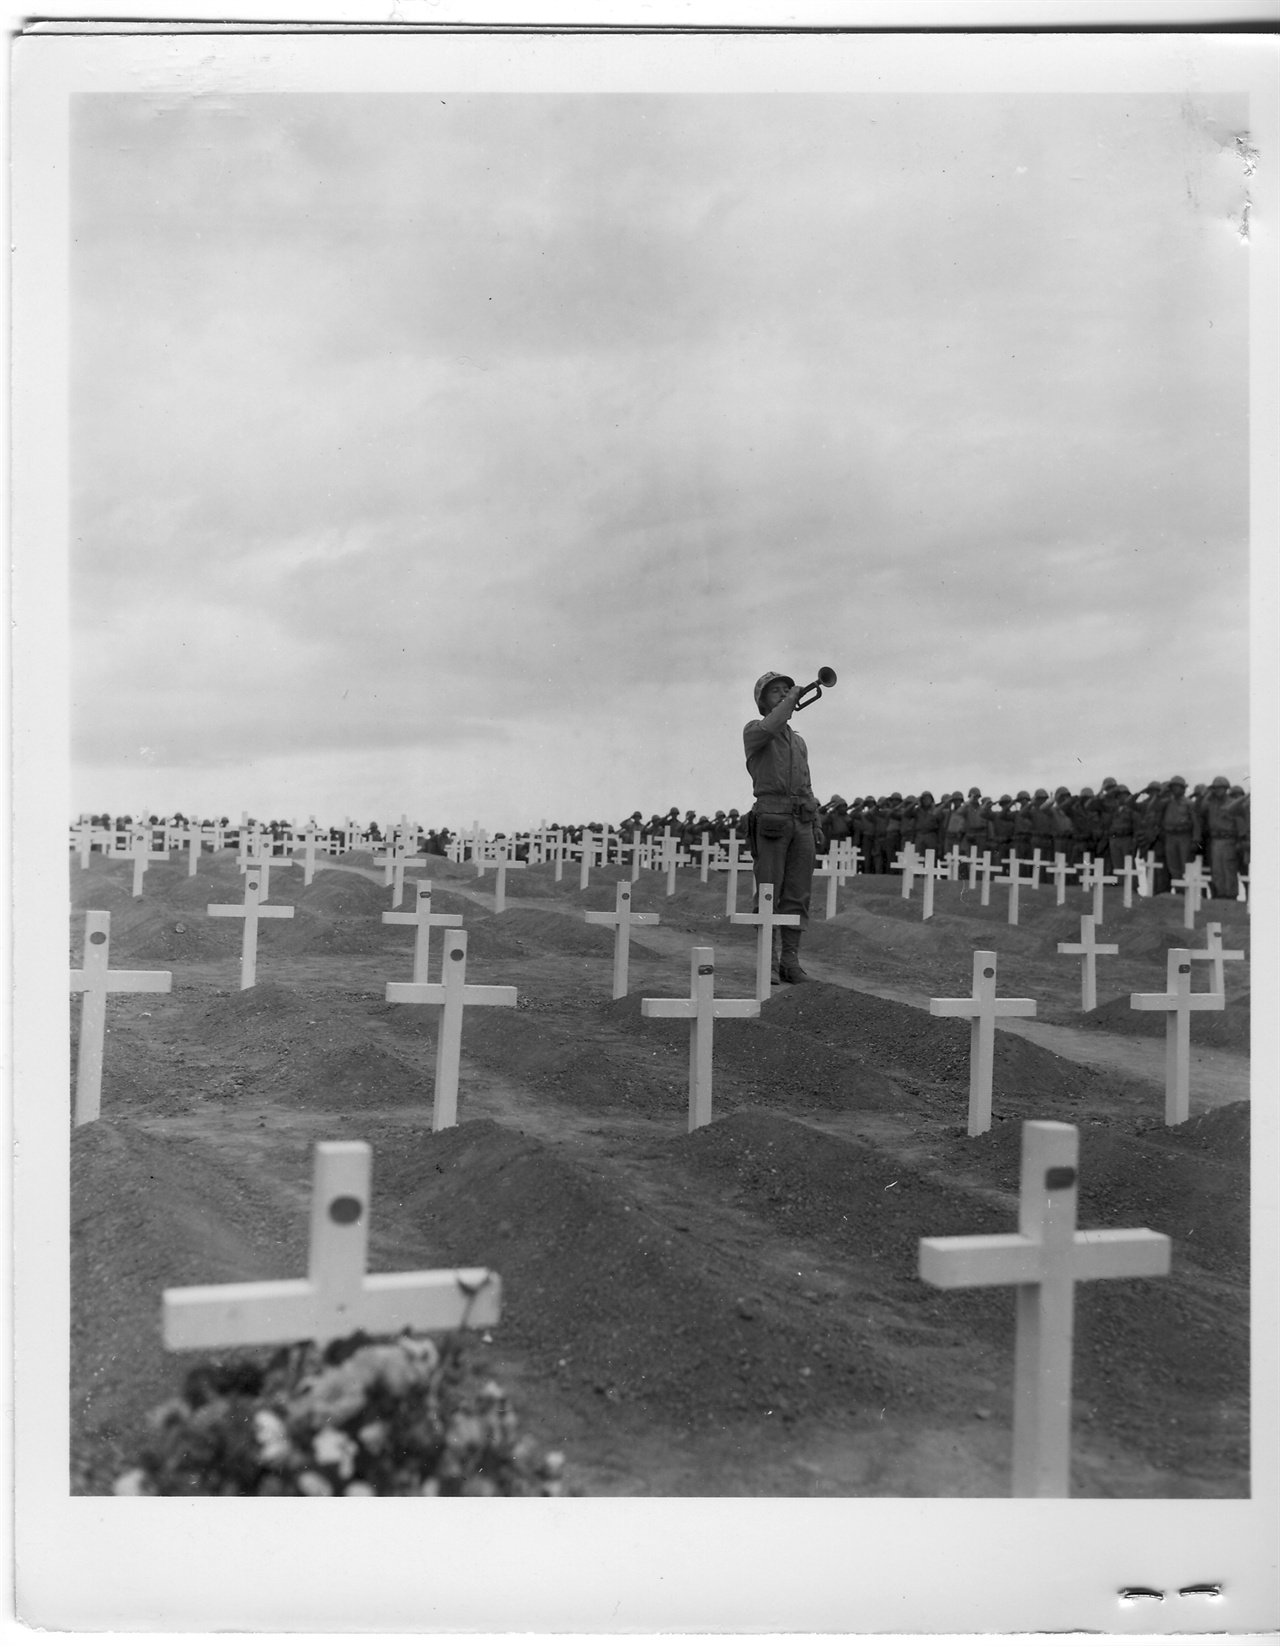  1950. 10. 8. 부산. 유엔군묘지에서 한 병사가 추도의 나팔을 불고 있다.